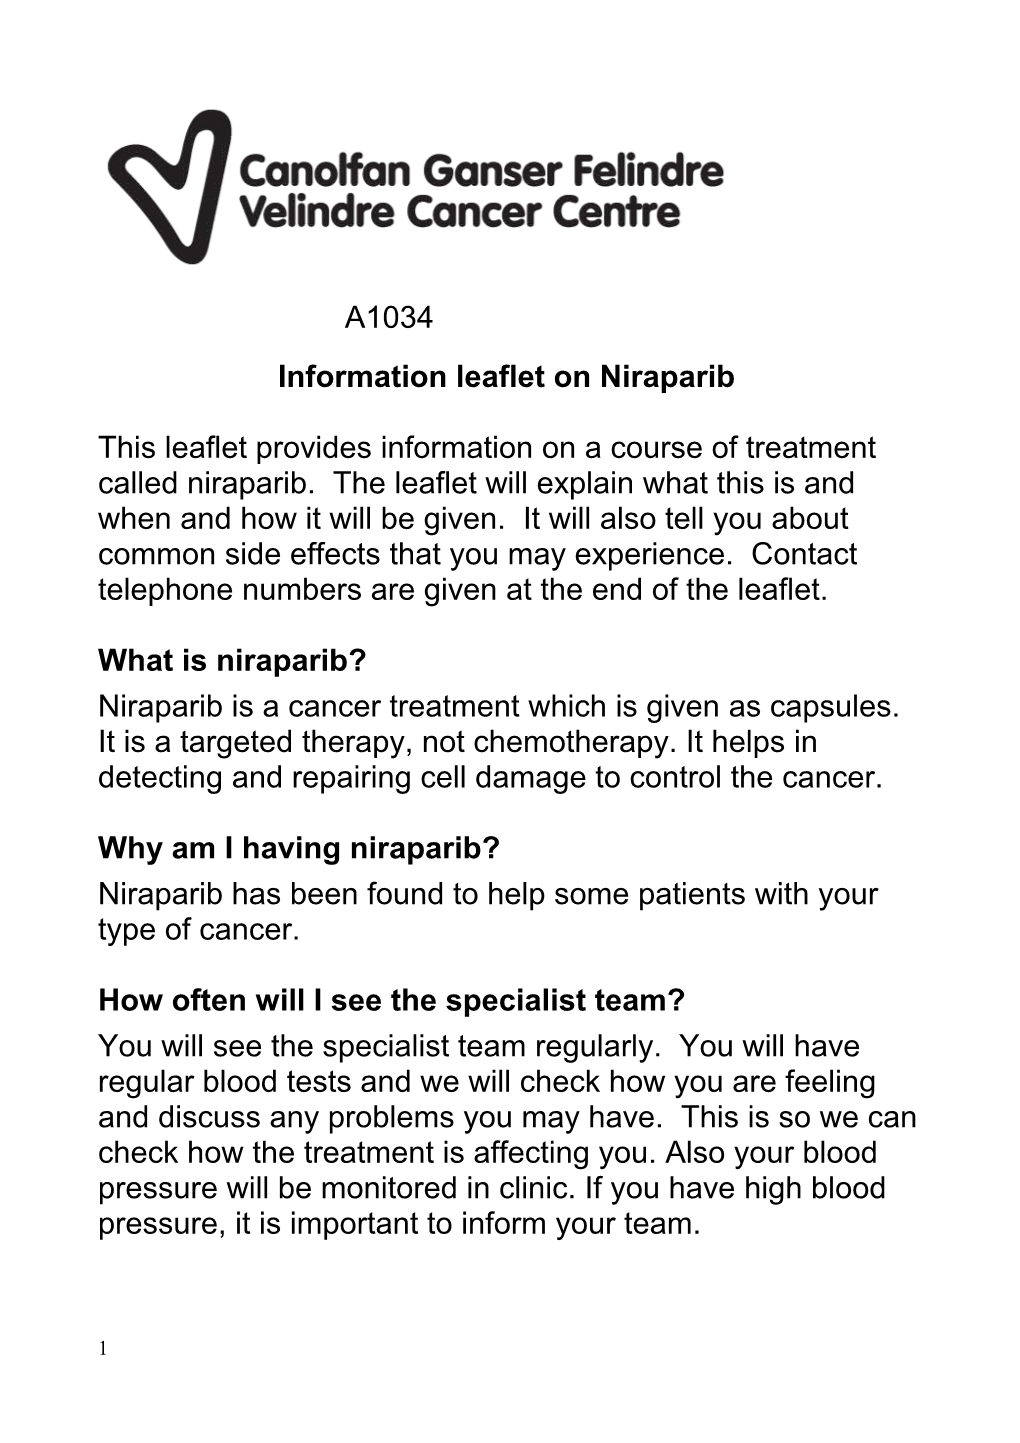 Information Leaflet on Niraparib